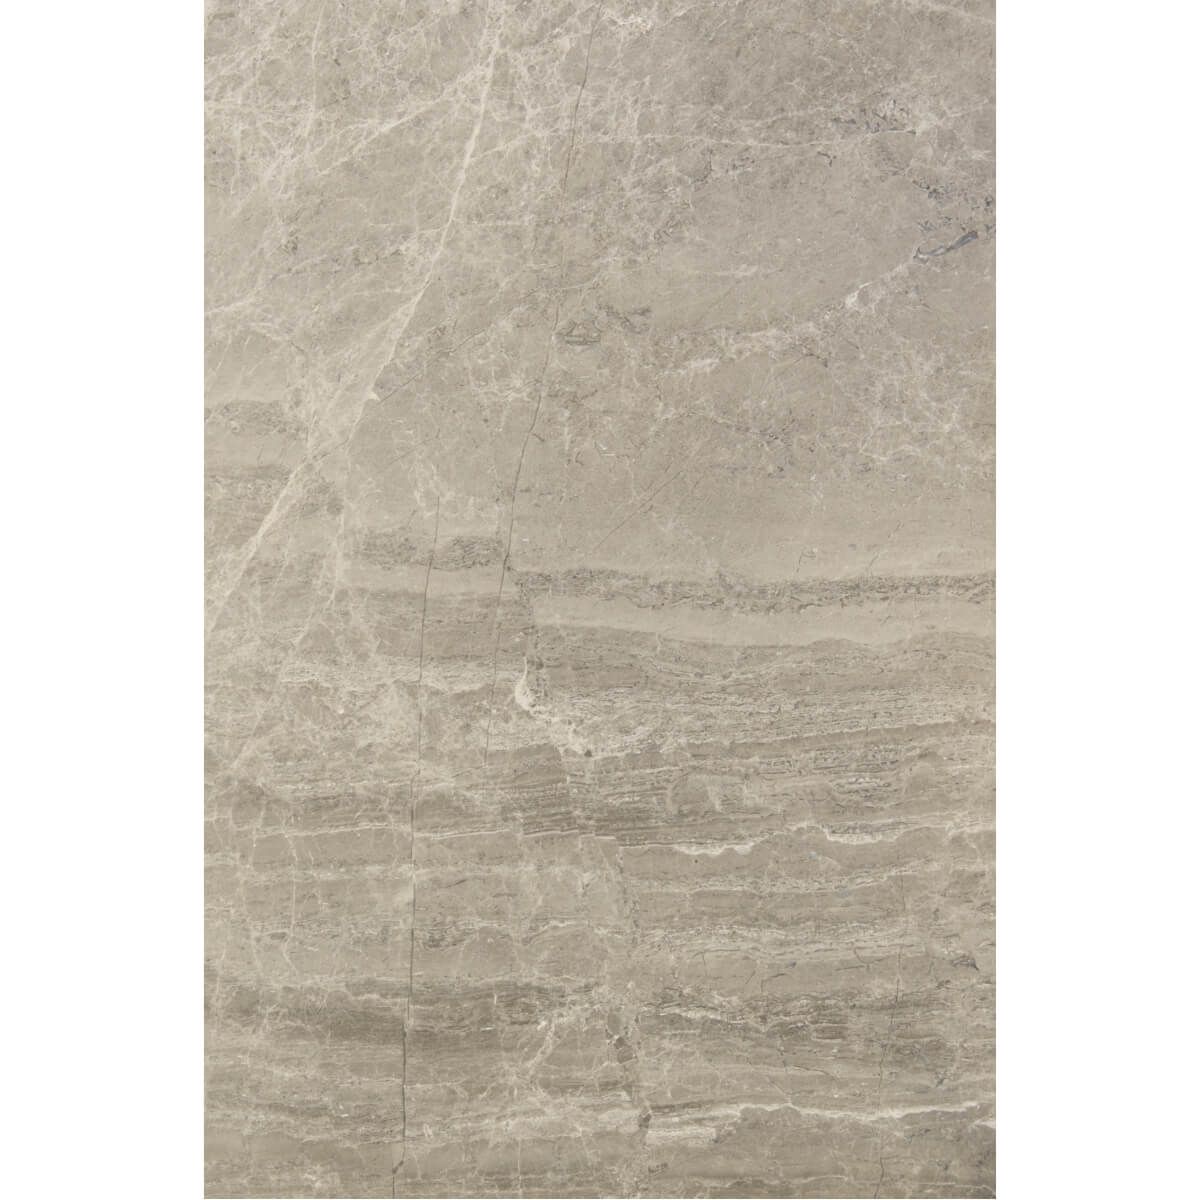 Płytki Marmurowe Atlantic Grey polerowane 40,6x61x1,2 cm